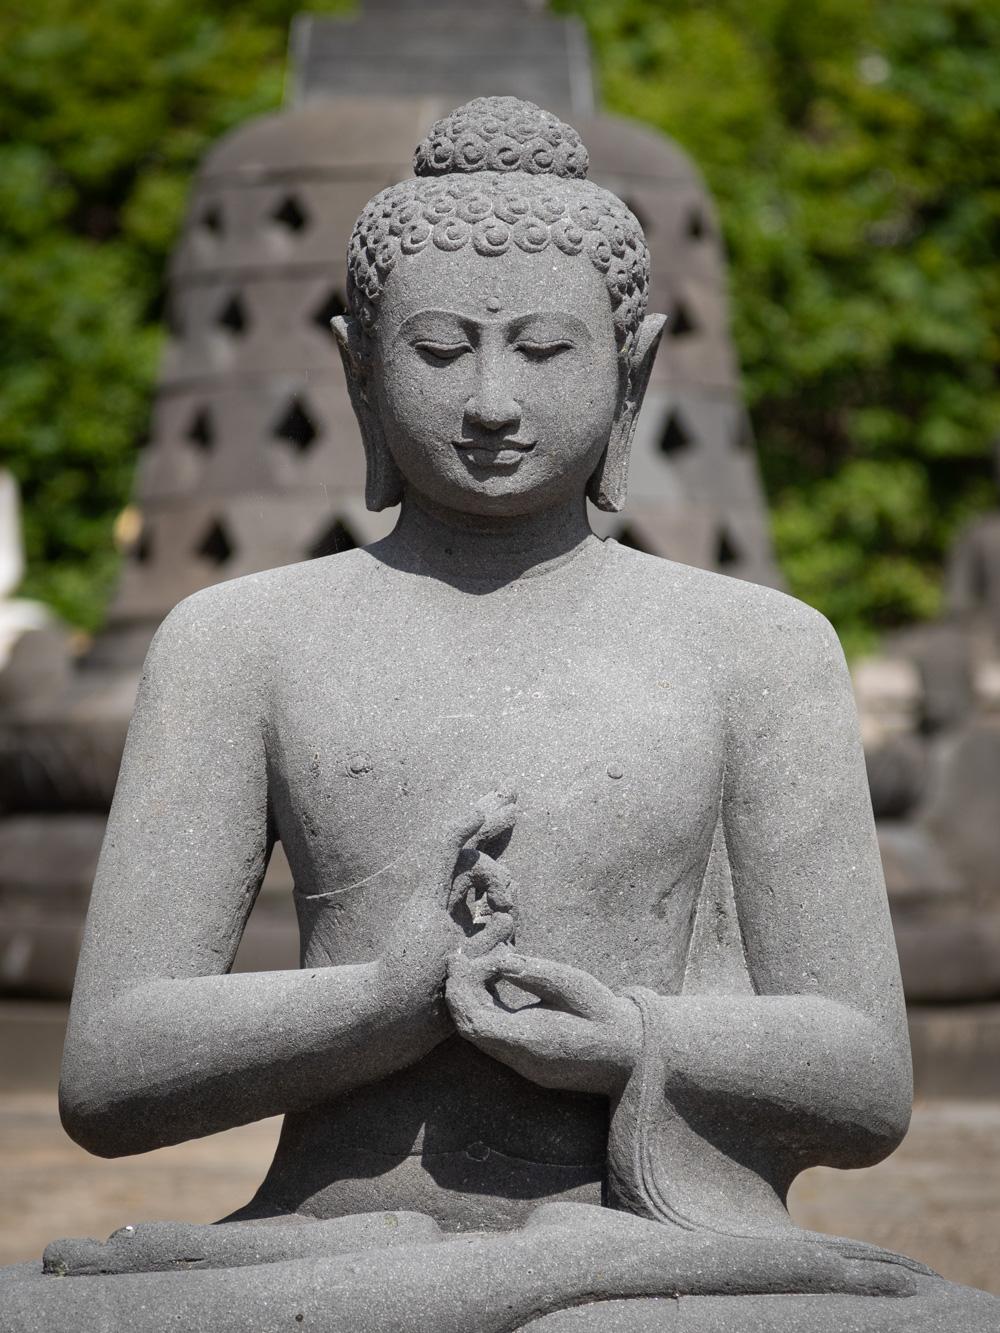 La statue de Bouddha en lavastone nouvellement fabriquée est une incarnation captivante de l'art spirituel, habilement sculptée dans le matériau durable qu'est la lavastone. D'une hauteur impressionnante de 92 cm, avec des dimensions de 77 cm en